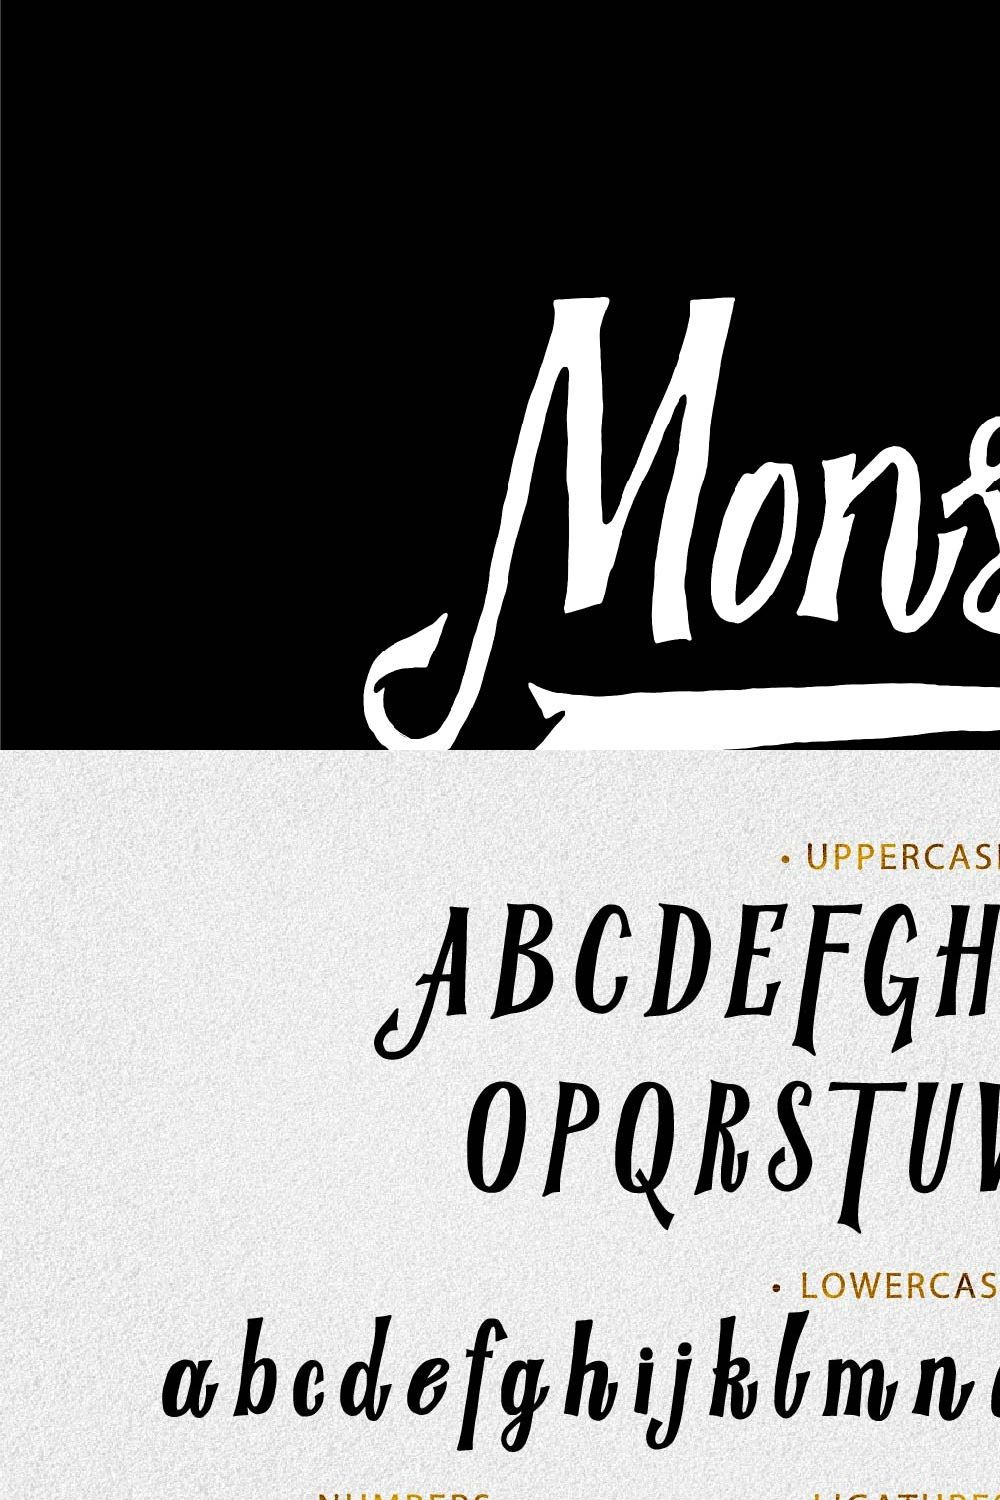 Monster - Vintage font pinterest preview image.